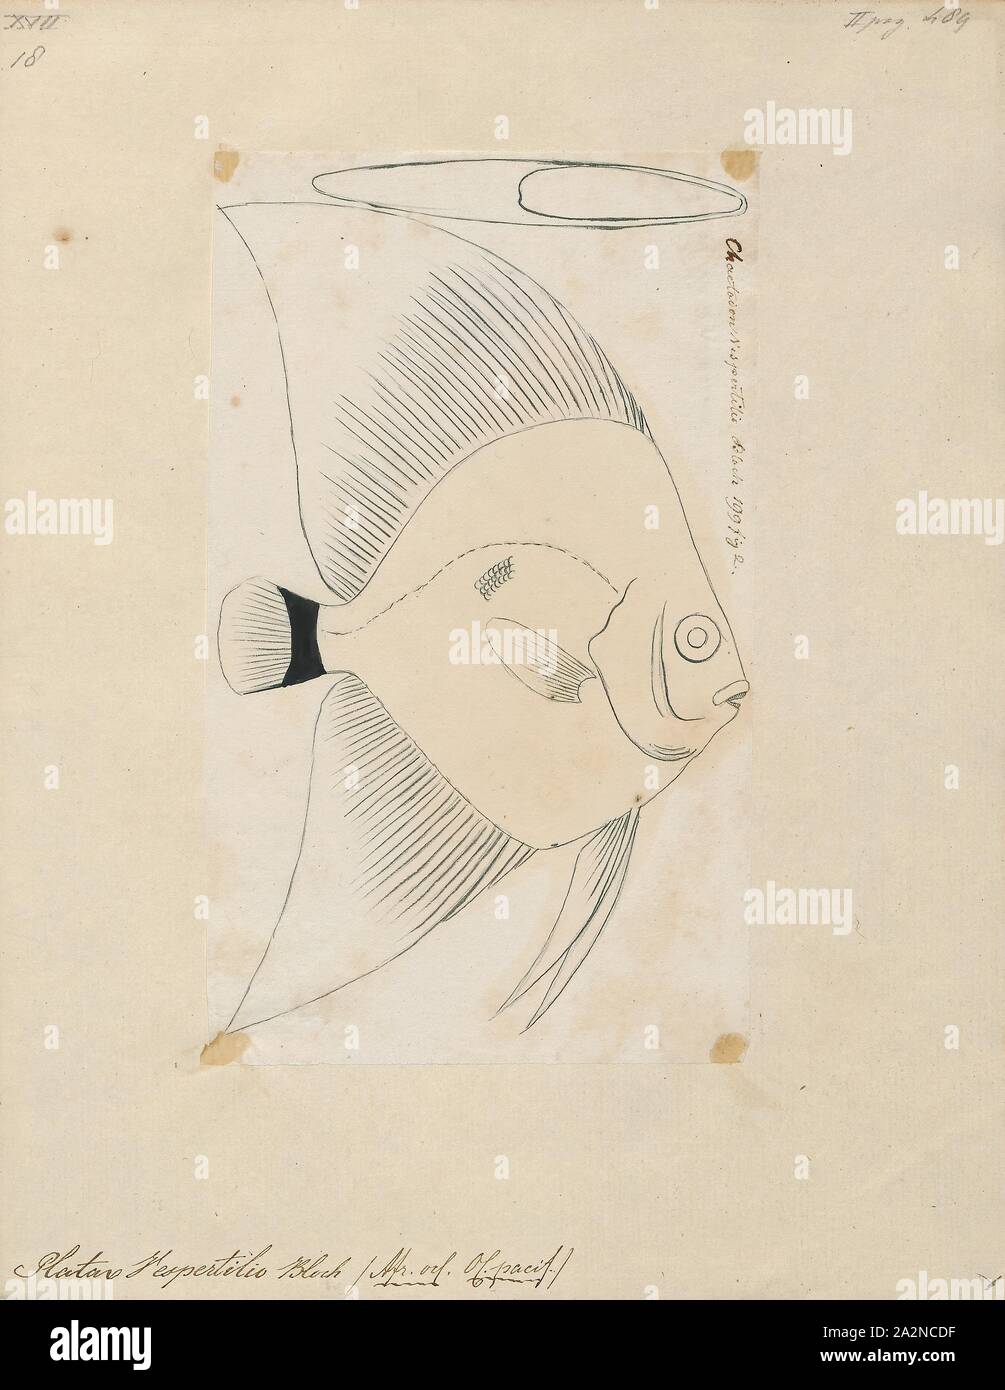 Platax vespertilio, Drucken, Platax ist eine Pflanzenart aus der Gattung der Indopazifischen, Riff-assoziierten Fisch aus der Familie der Ephippidae. Es gibt derzeit fünf bekannten rezenten Arten im Allgemeinen für die Gattung zu gehören. Sie einer der Fische Taxa gemeinhin bekannt als "fledermausfische"., 1700-1880 Stockfoto